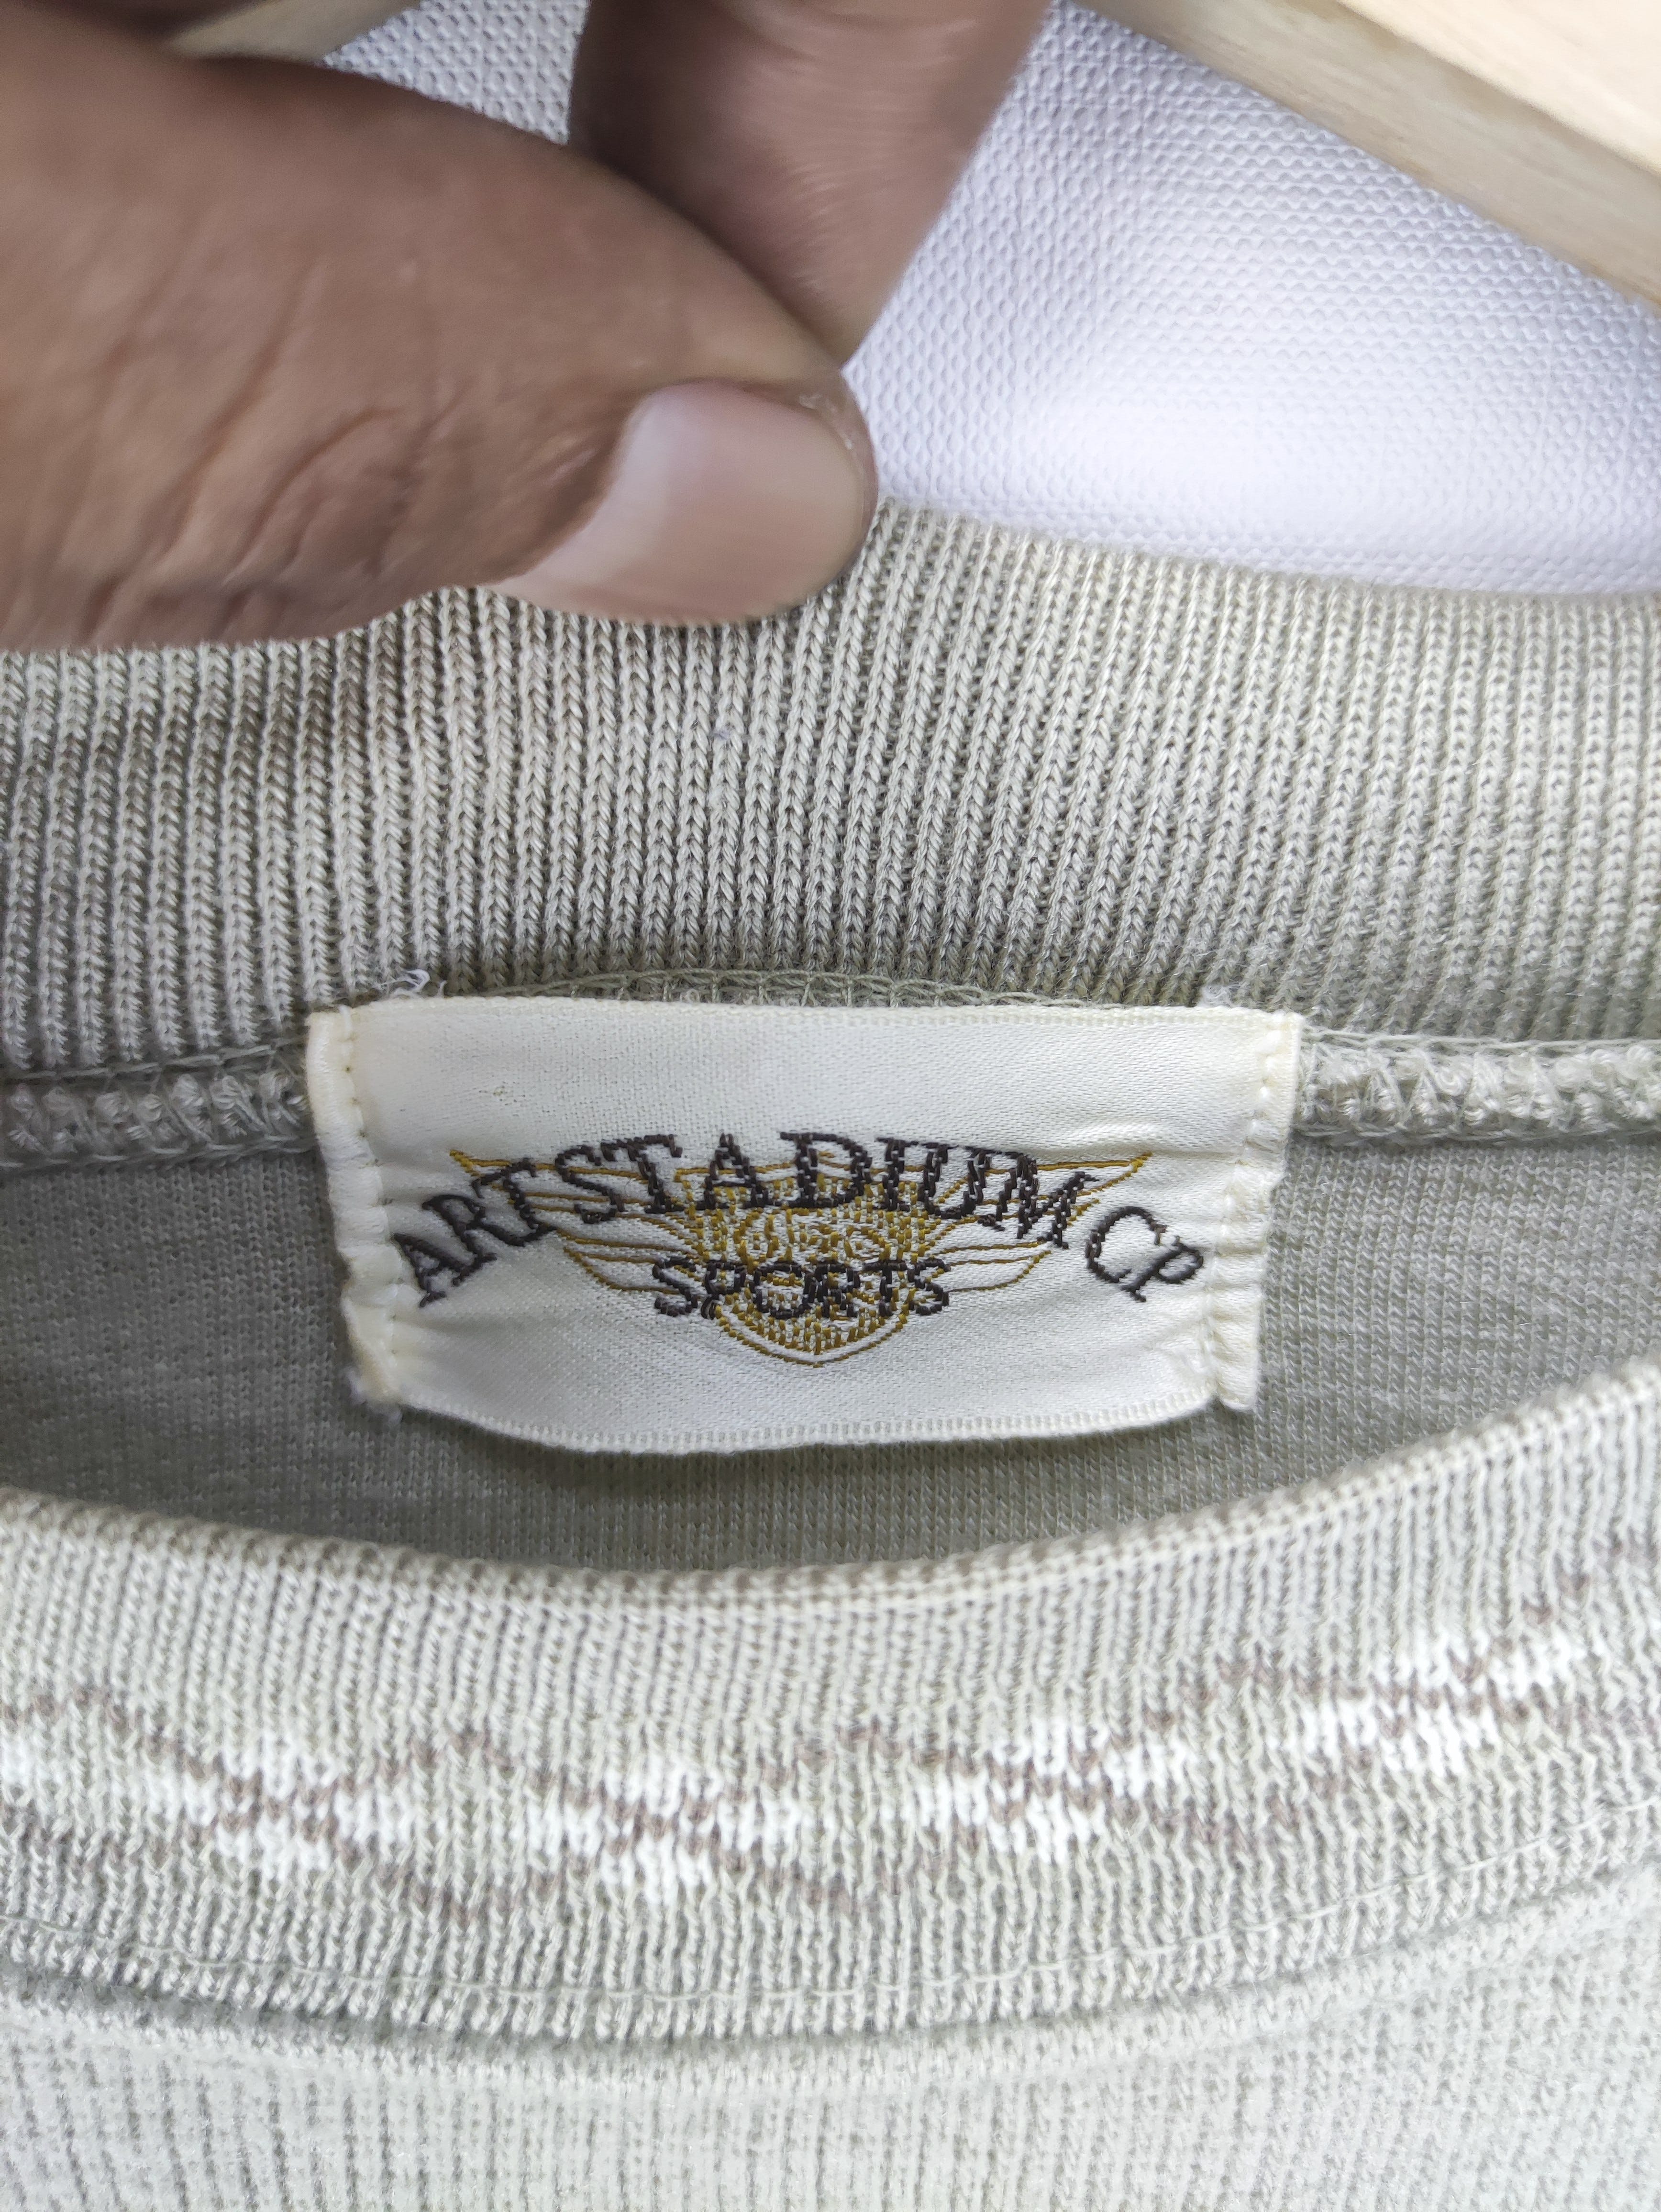 Vintage Sweatshirt Embroidered Logo By Art Stadium Cp - 3